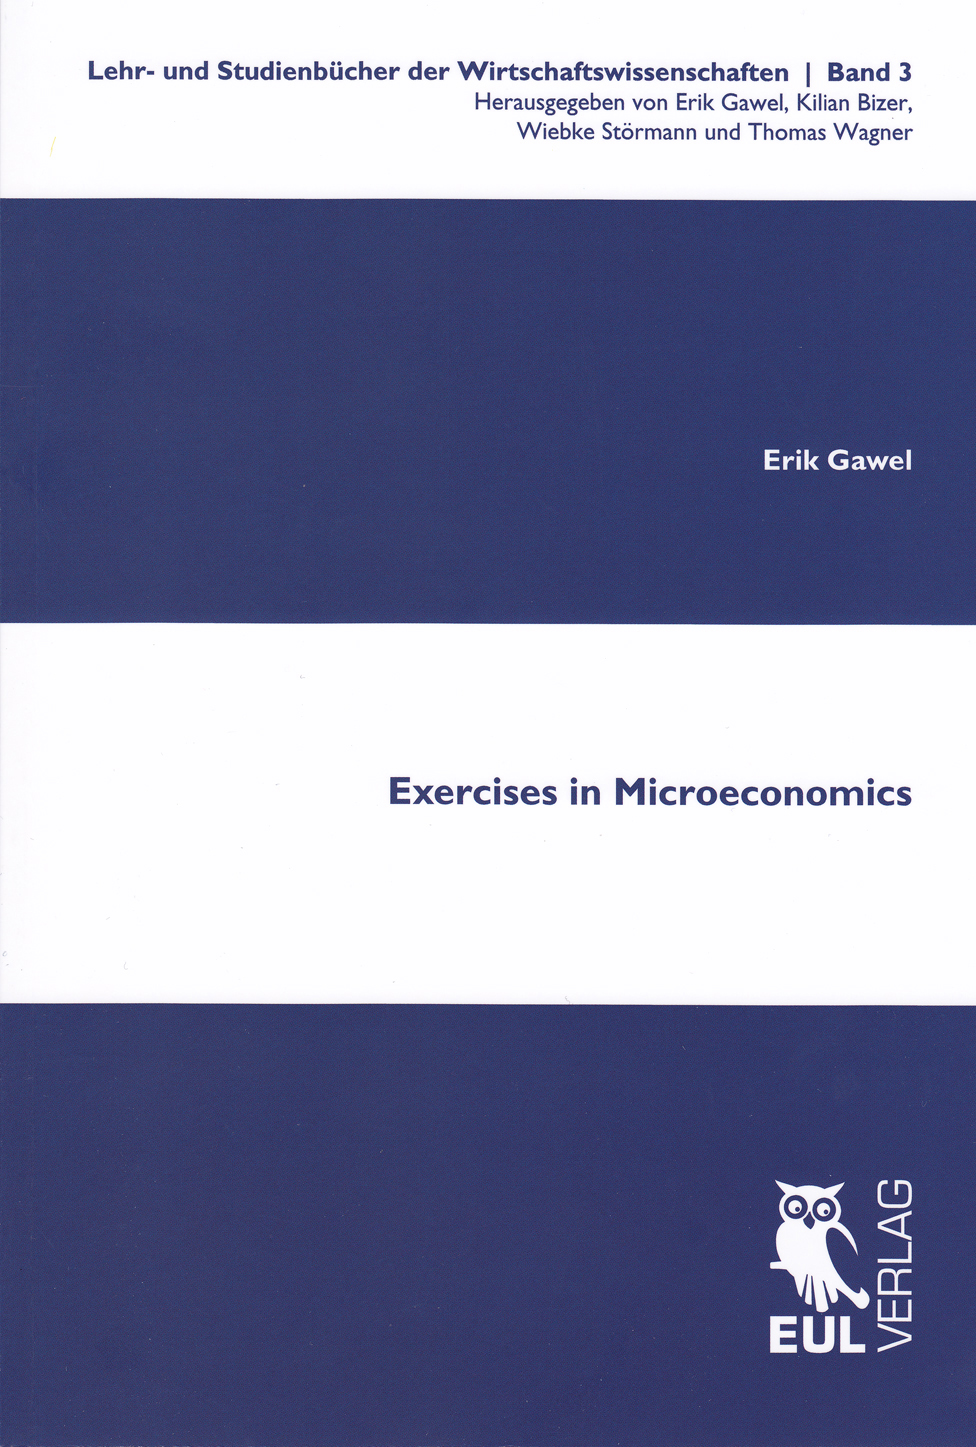 Exercises in Microeconomics